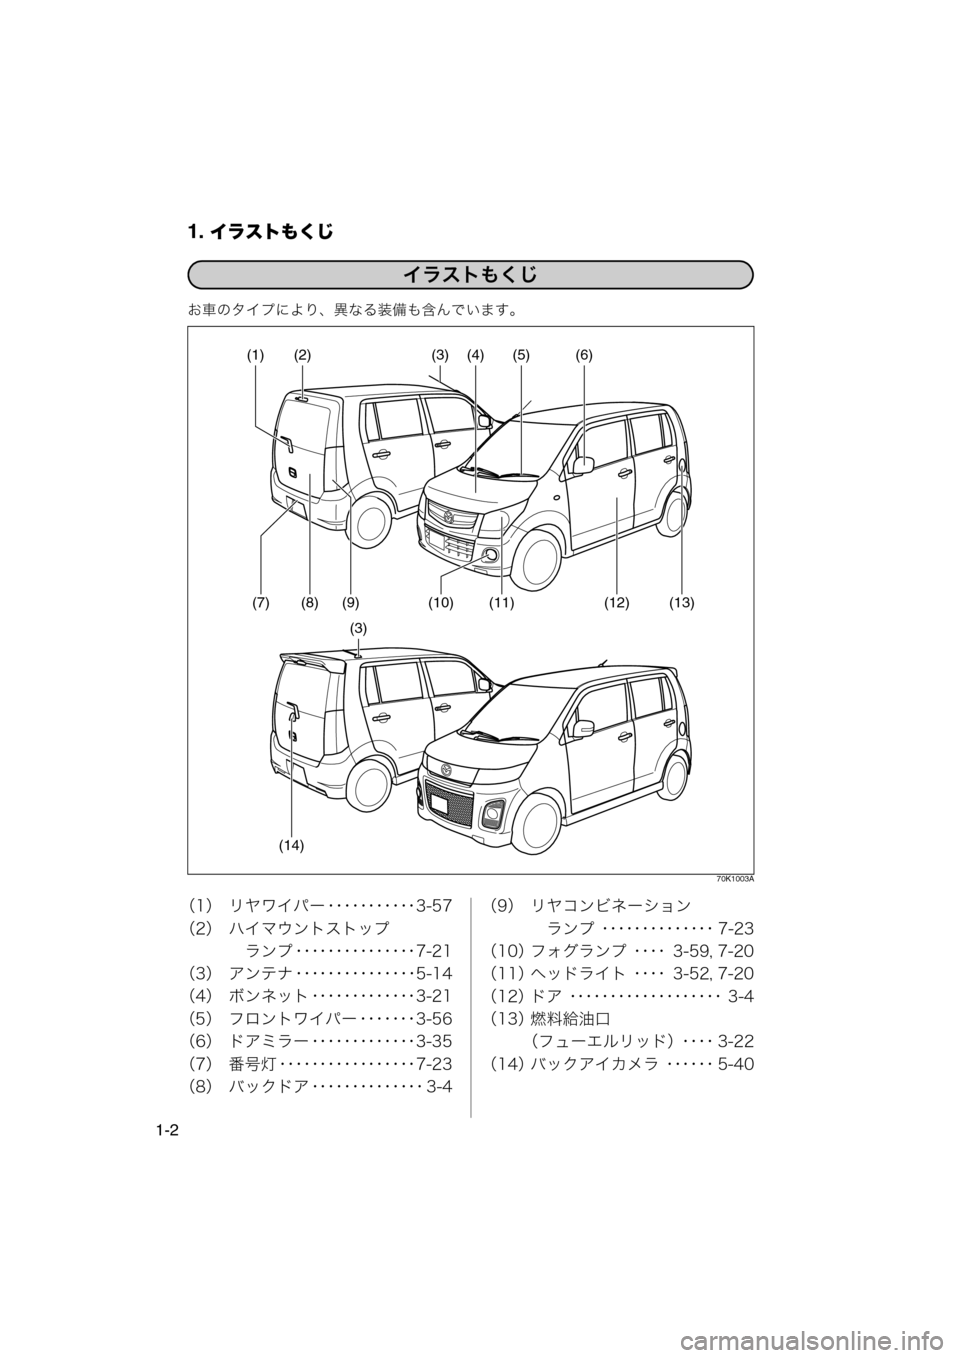 MAZDA MODEL AZ-WAGON 2012  ワゴン｜取扱説明書 (in Japanese) 1. イラストもくじ
1-2
お車のタイプにより、異なる装備も含んでいます。
70K1003A
（1） リヤワイパー ･･･････････3-57
（2） ハイマウント�